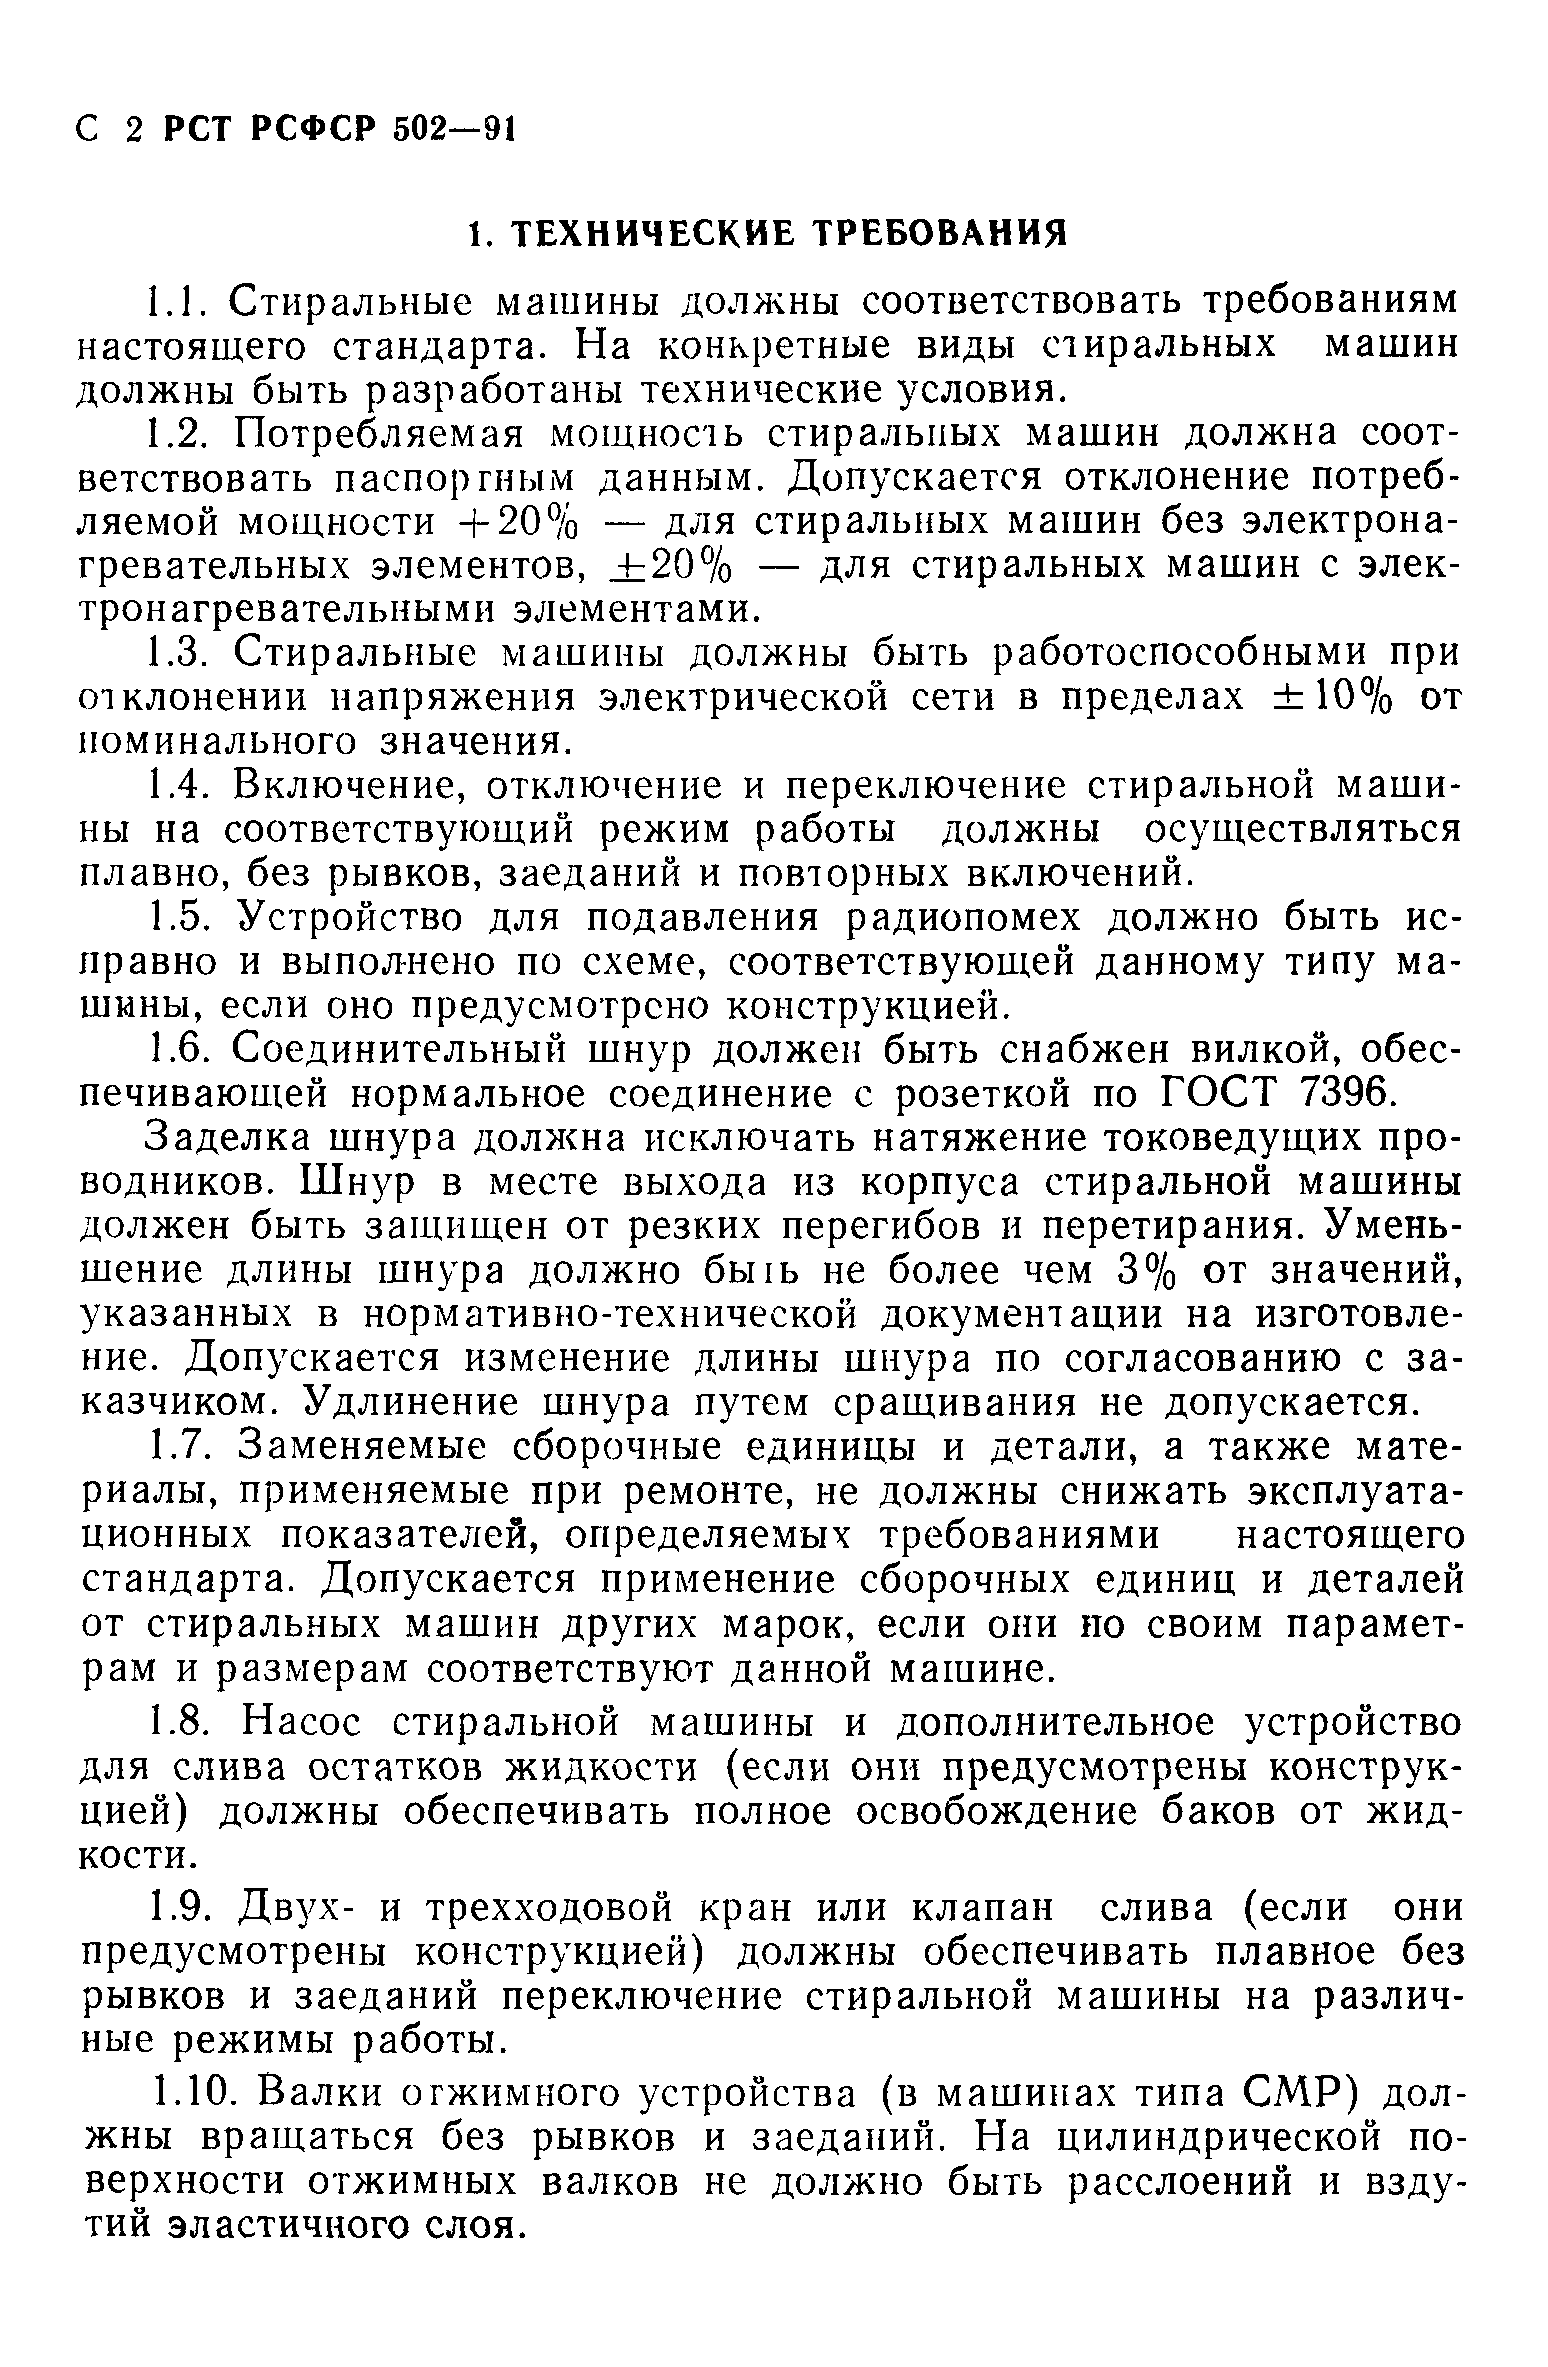 РСТ РСФСР 502-91